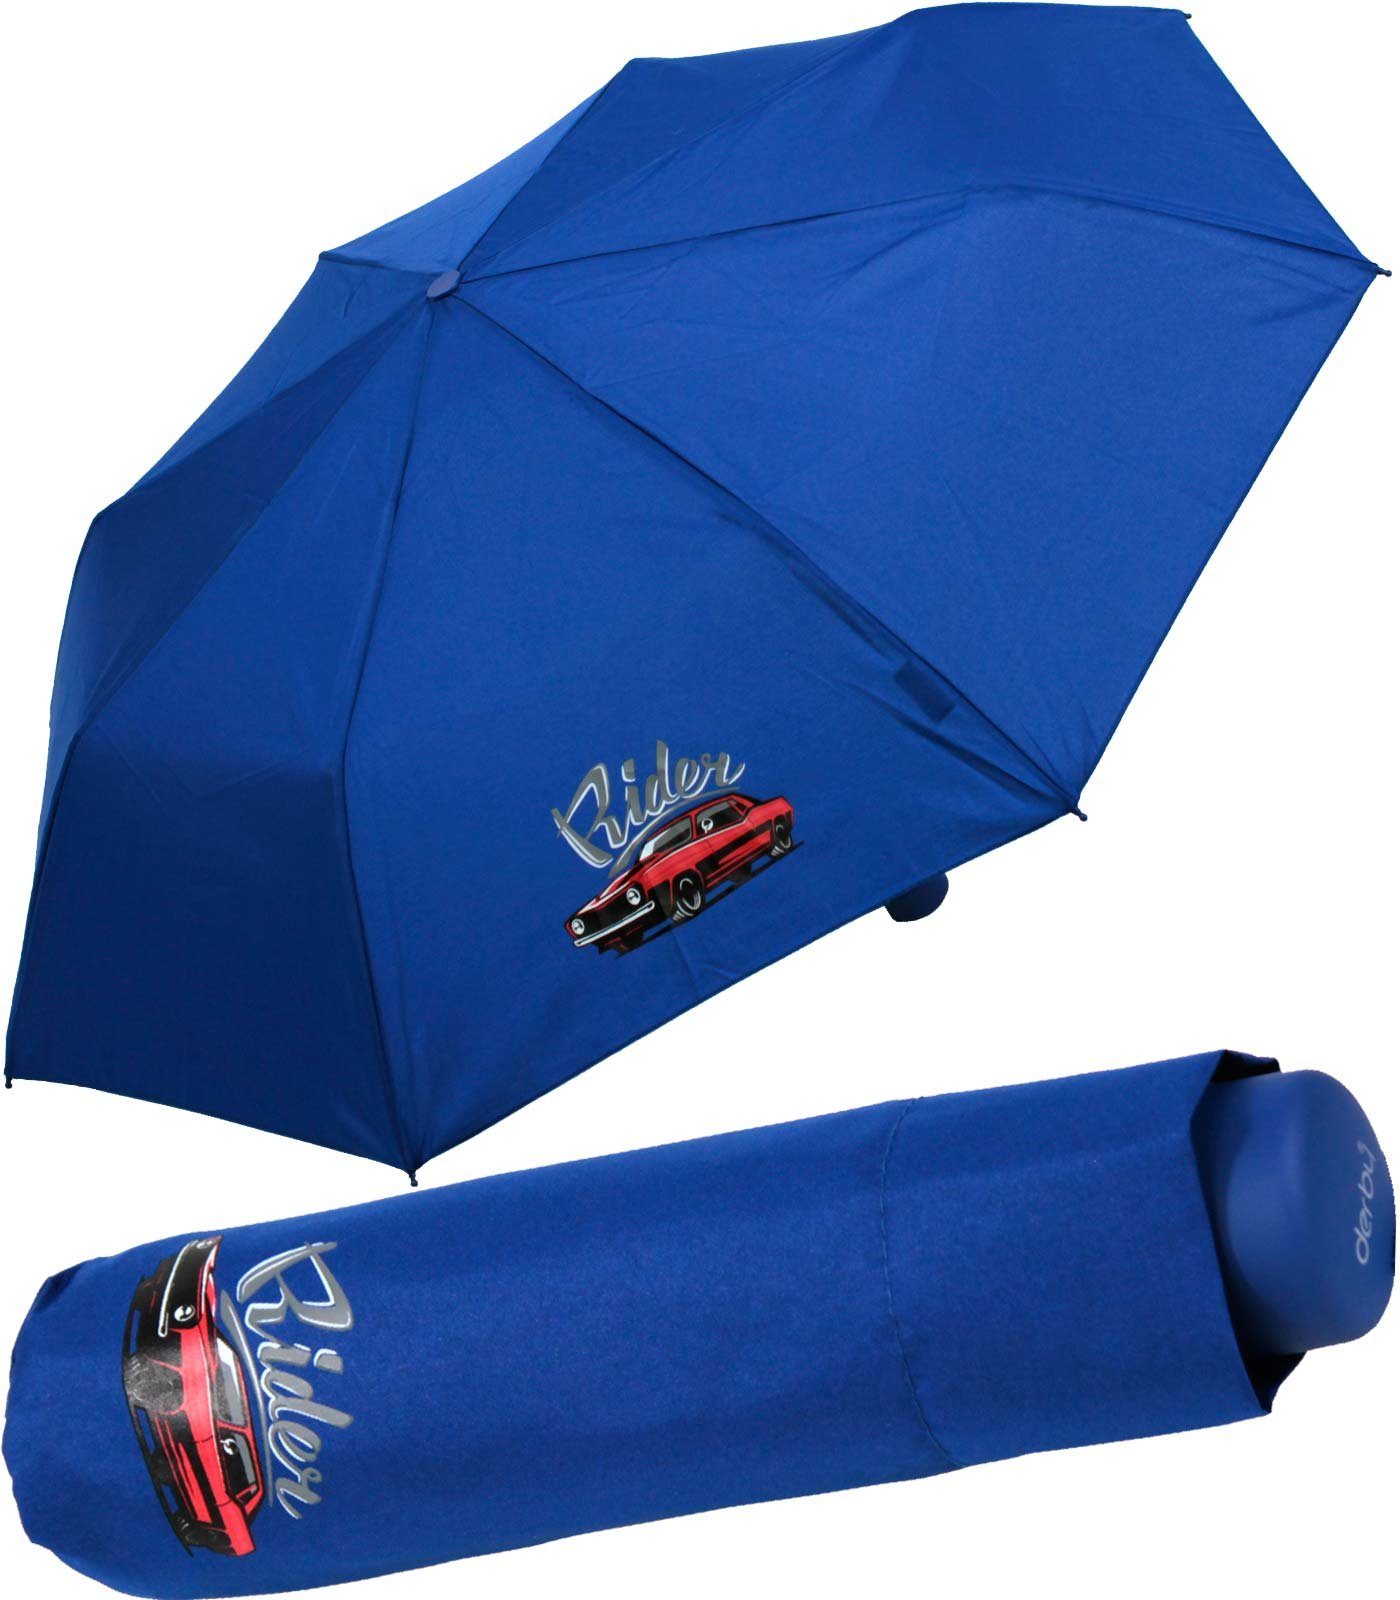 Mini coolen blau, leicht leichter - Motiven ein Kids derby Schule den Schirm mit Schulweg Taschenregenschirm cars Kinderschirm rider für Jungen